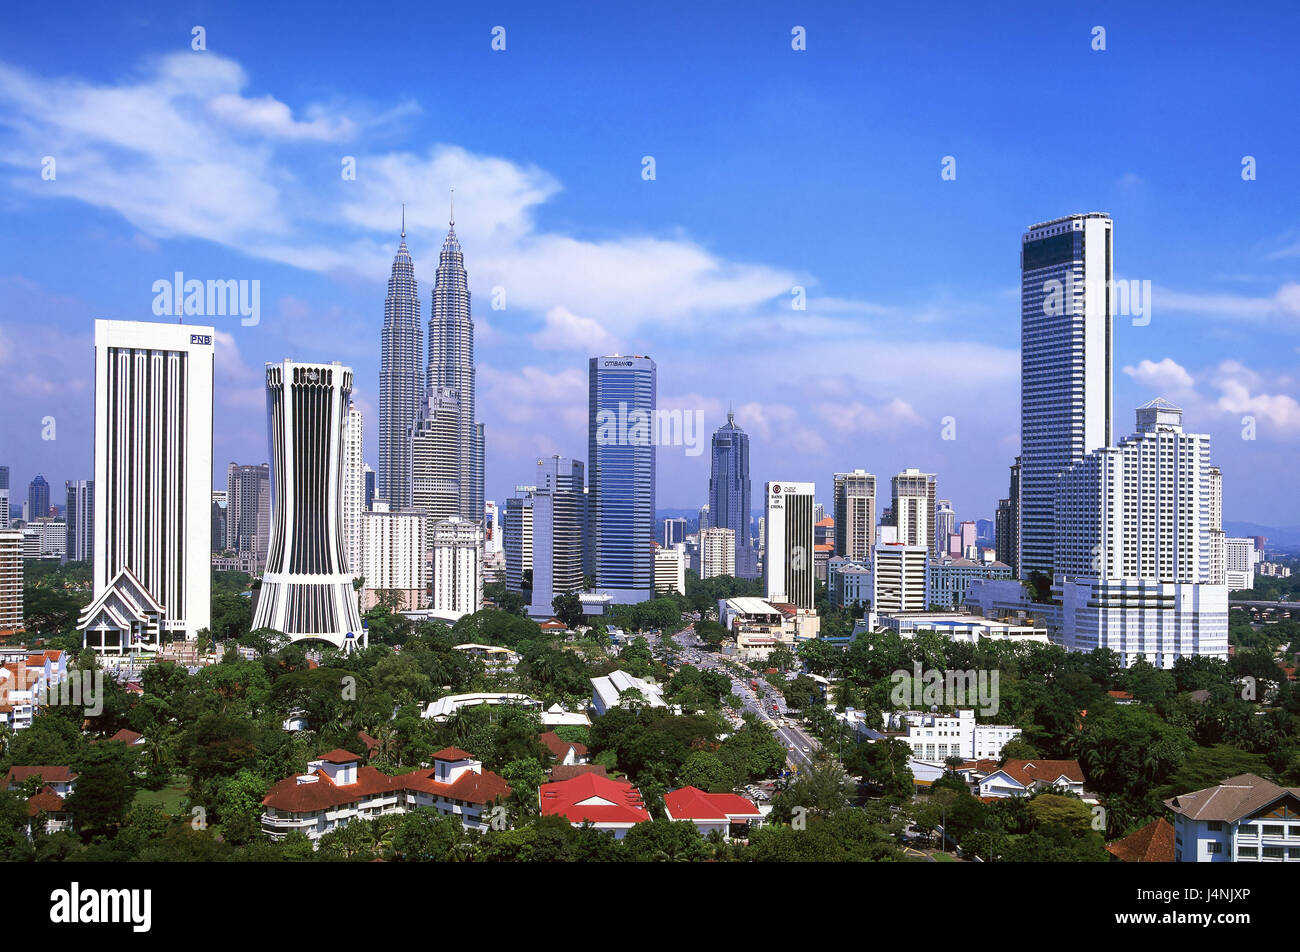 La Malaisie, Kuala Lumpur, vue sur la ville, des tours Petronas, la tour, l'Asie, Asie du Sud-Est, ville, ville, capitale, centre-ville, immeuble, Skyline, gratte-ciel, Tours, tours jumelles, monument, architecture, moderne, Banque D'Images